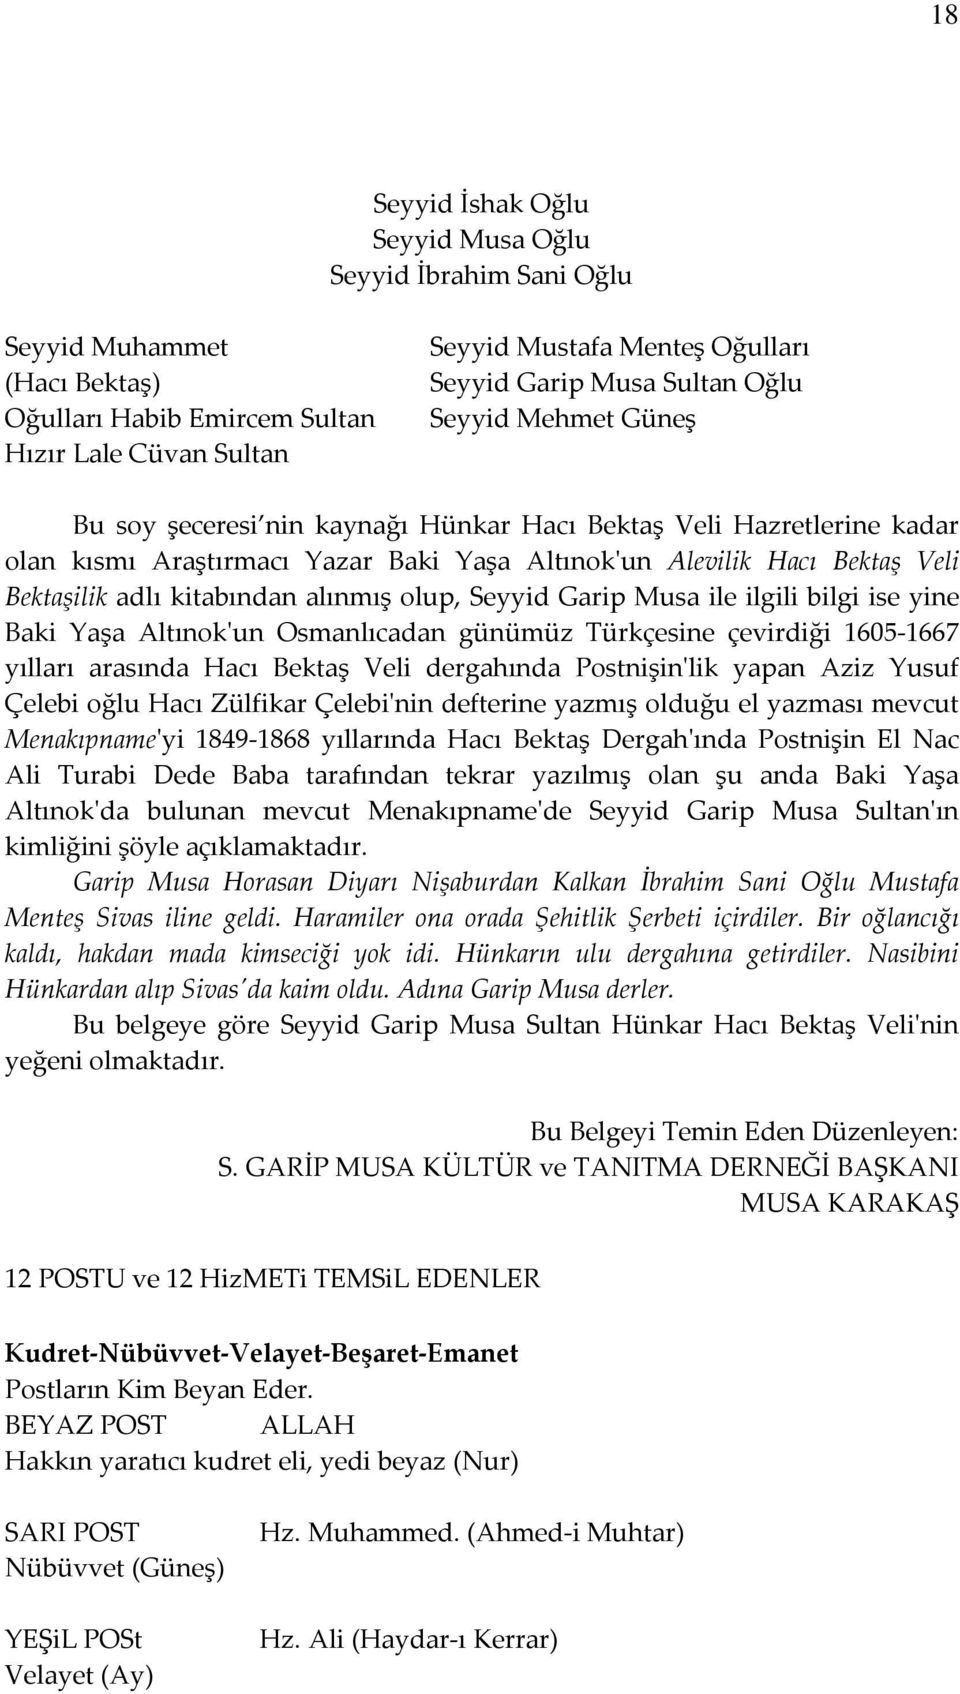 kitabından alınmış olup, Seyyid Garip Musa ile ilgili bilgi ise yine Baki Yaşa Altınok'un Osmanlıcadan günümüz Türkçesine çevirdiği 1605-1667 yılları arasında Hacı Bektaş Veli dergahında